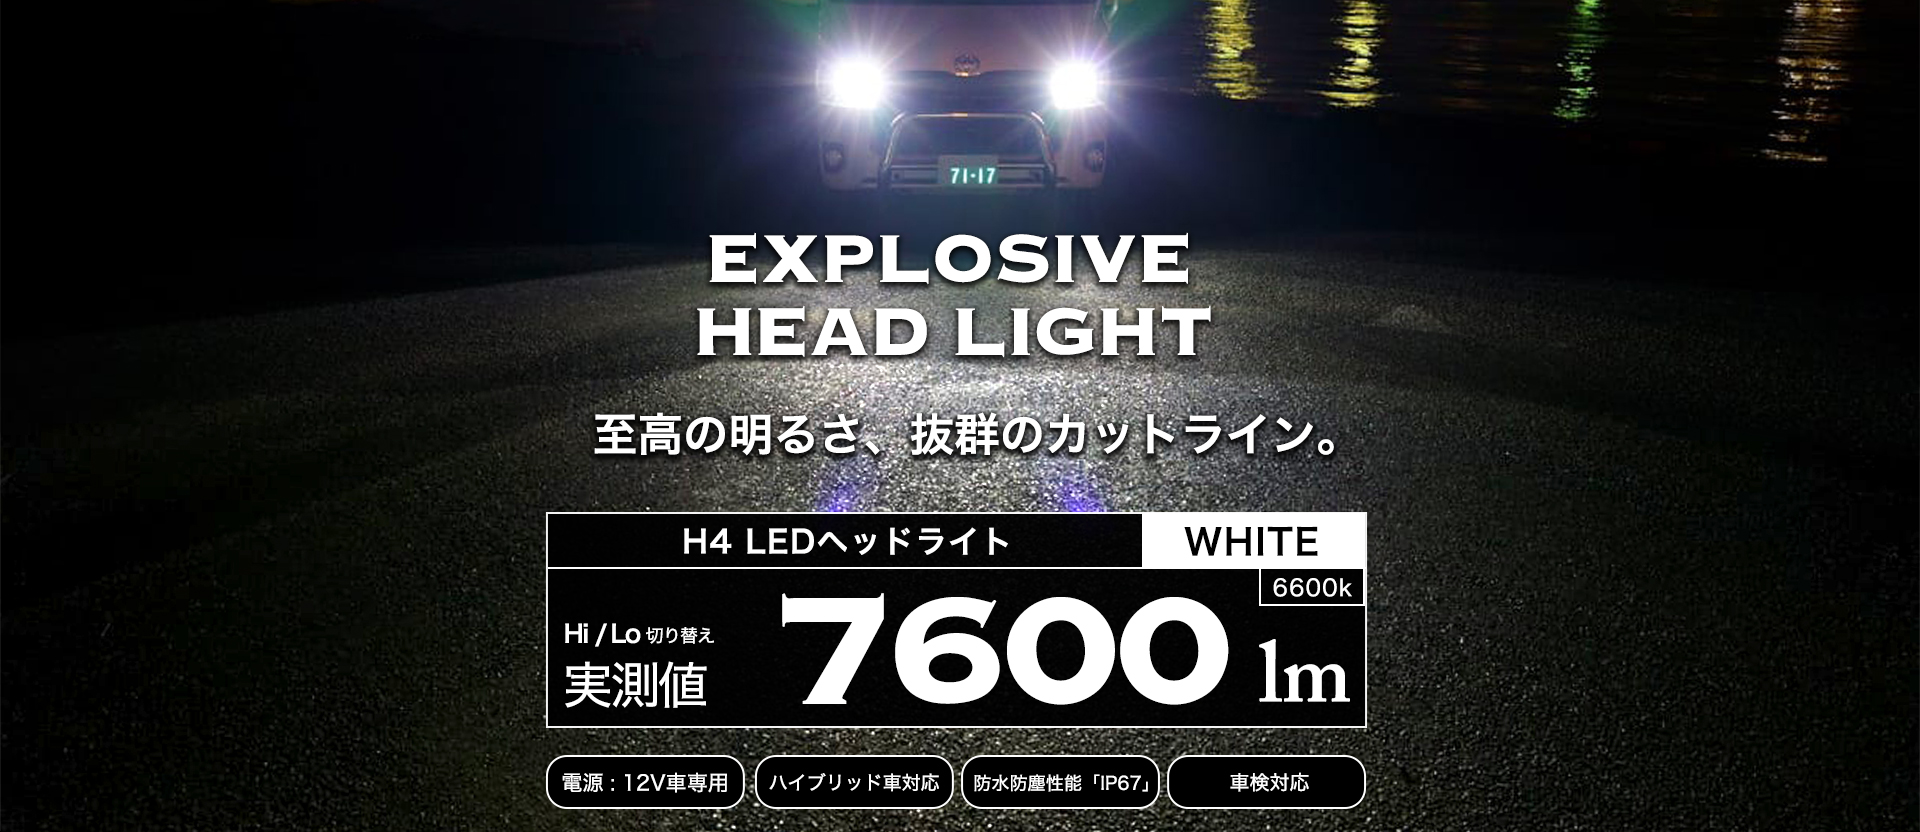 H4 LED ヘッドライト 7600lm | VELENO ヴェレーノ